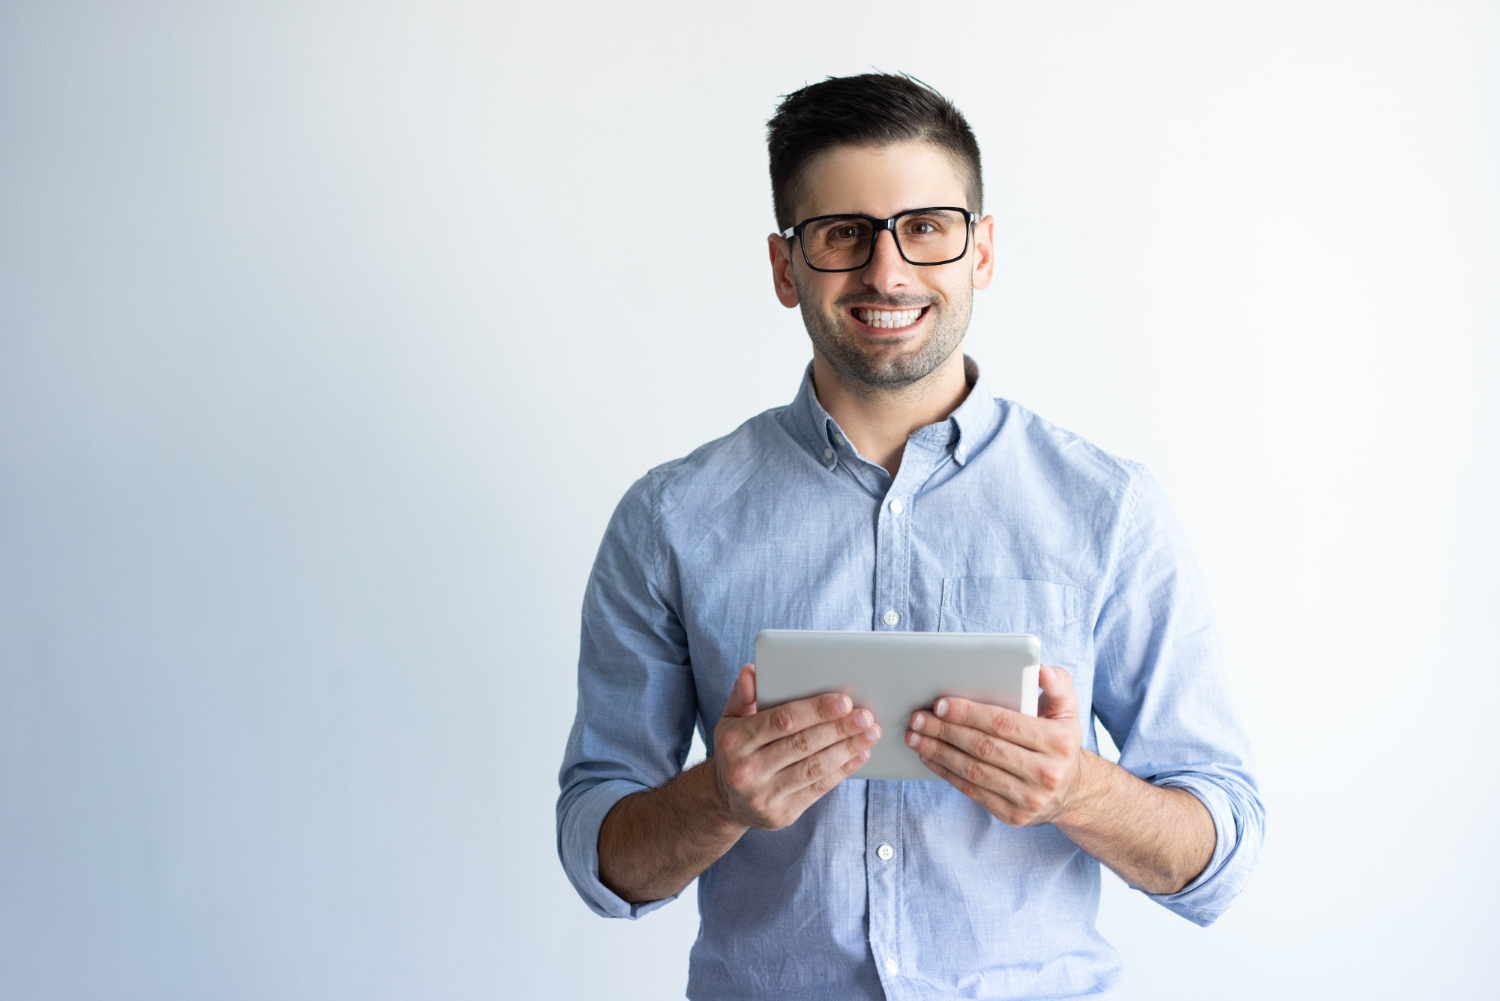 Homem jovem em um fundo branco-cinza, segurando um tablet e sorrindo para frente, dando a ideia de trabalhador de terceirização de TI